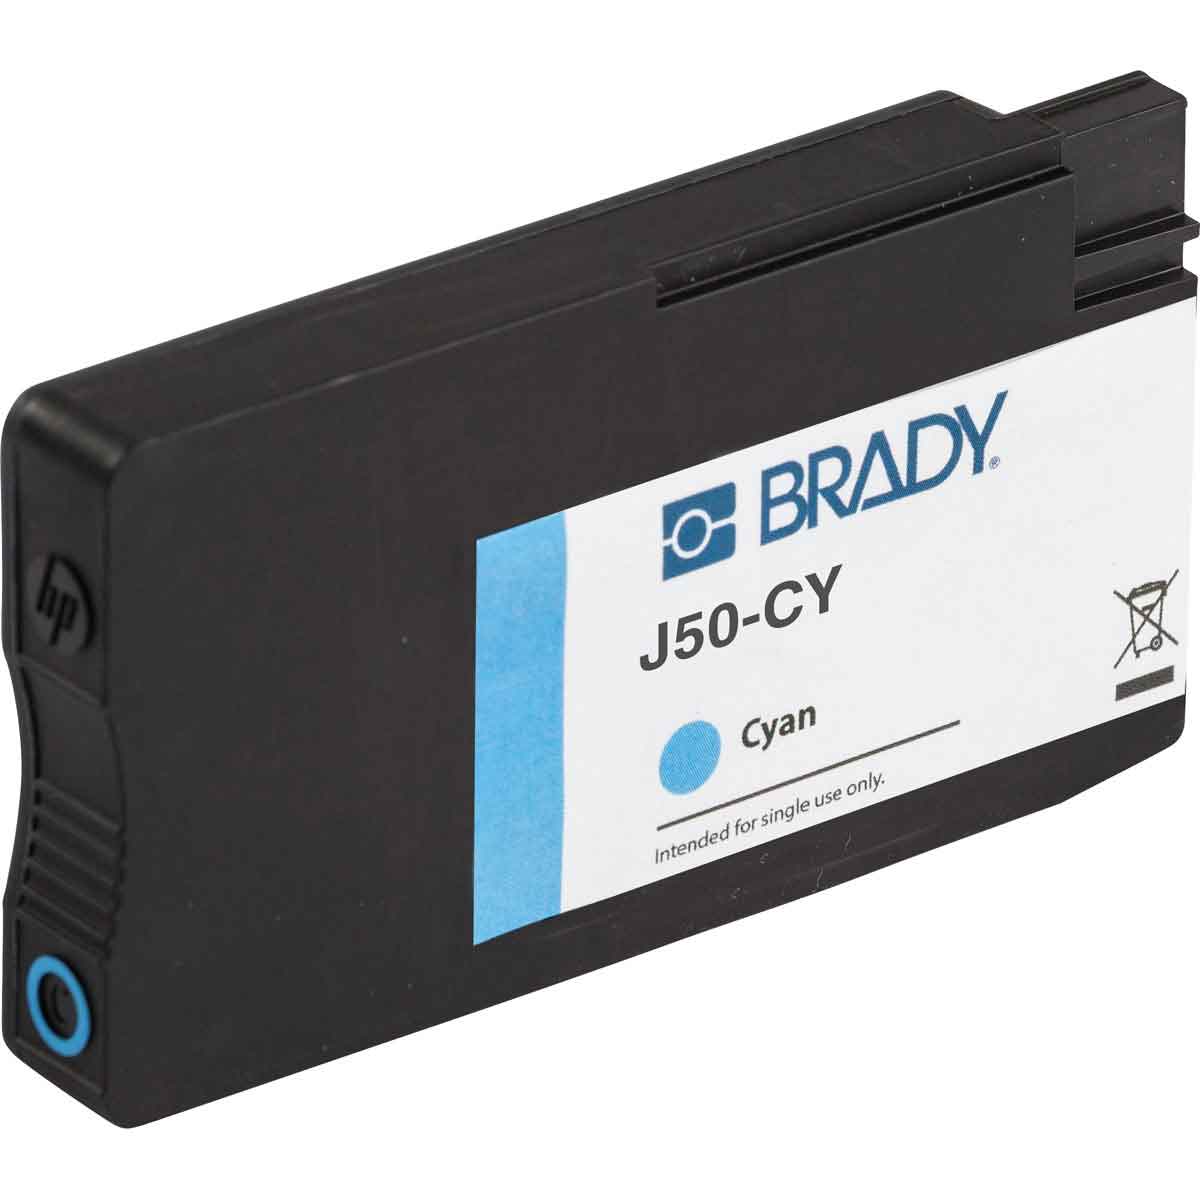 Cartouche d'encre cyan pour imprimante BradyJet J5000